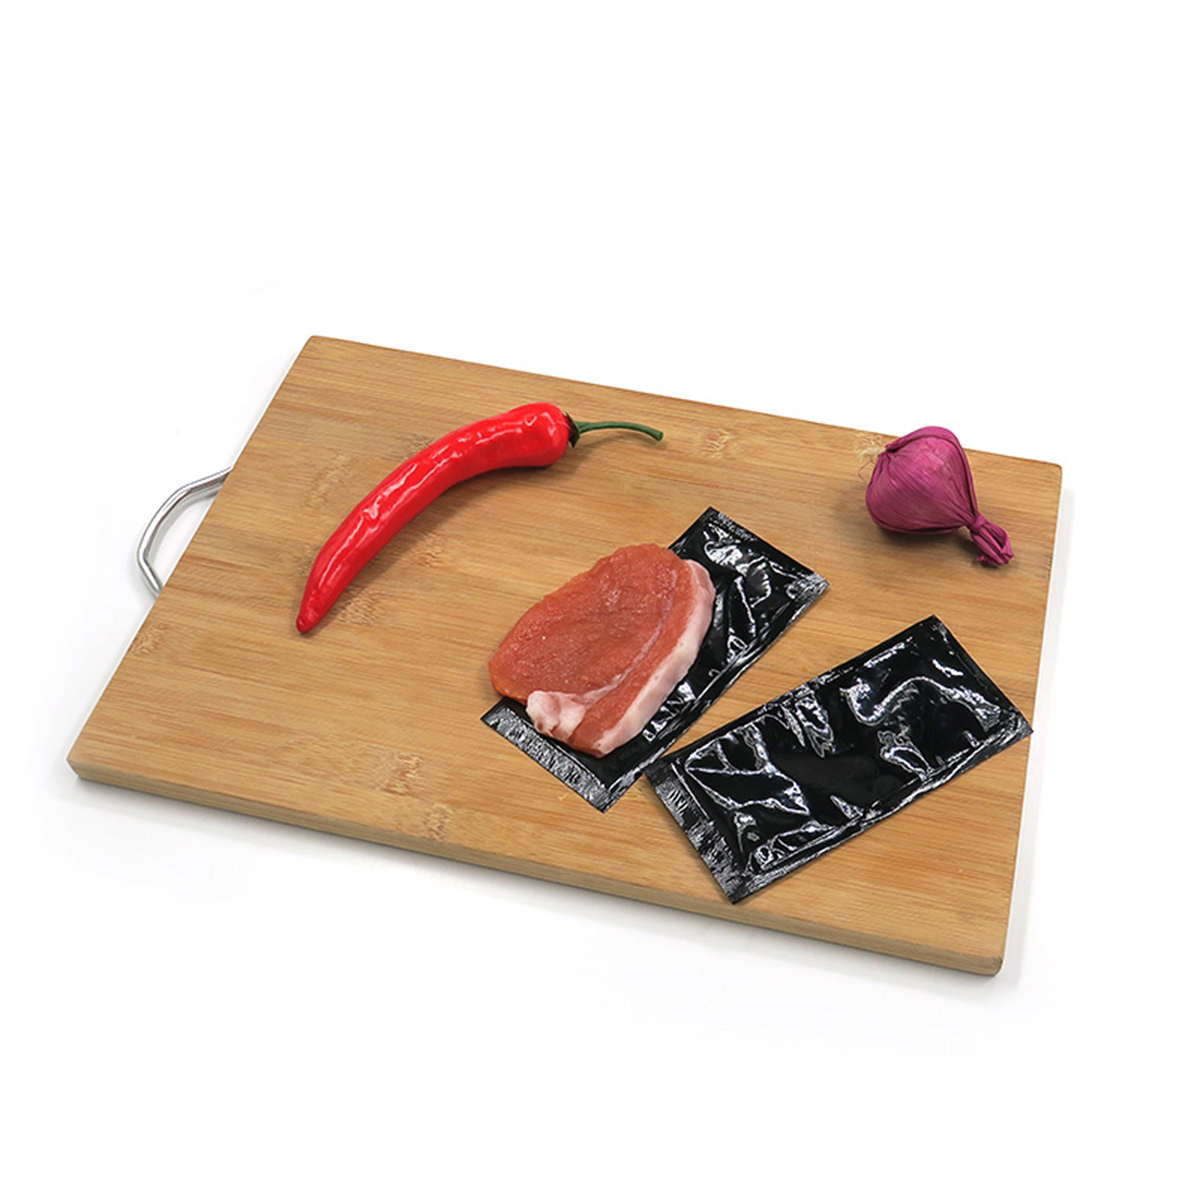 Sang de poulet fruits de mer fruits volaille viande et poisson tampon absorbant pour plateaux jetables